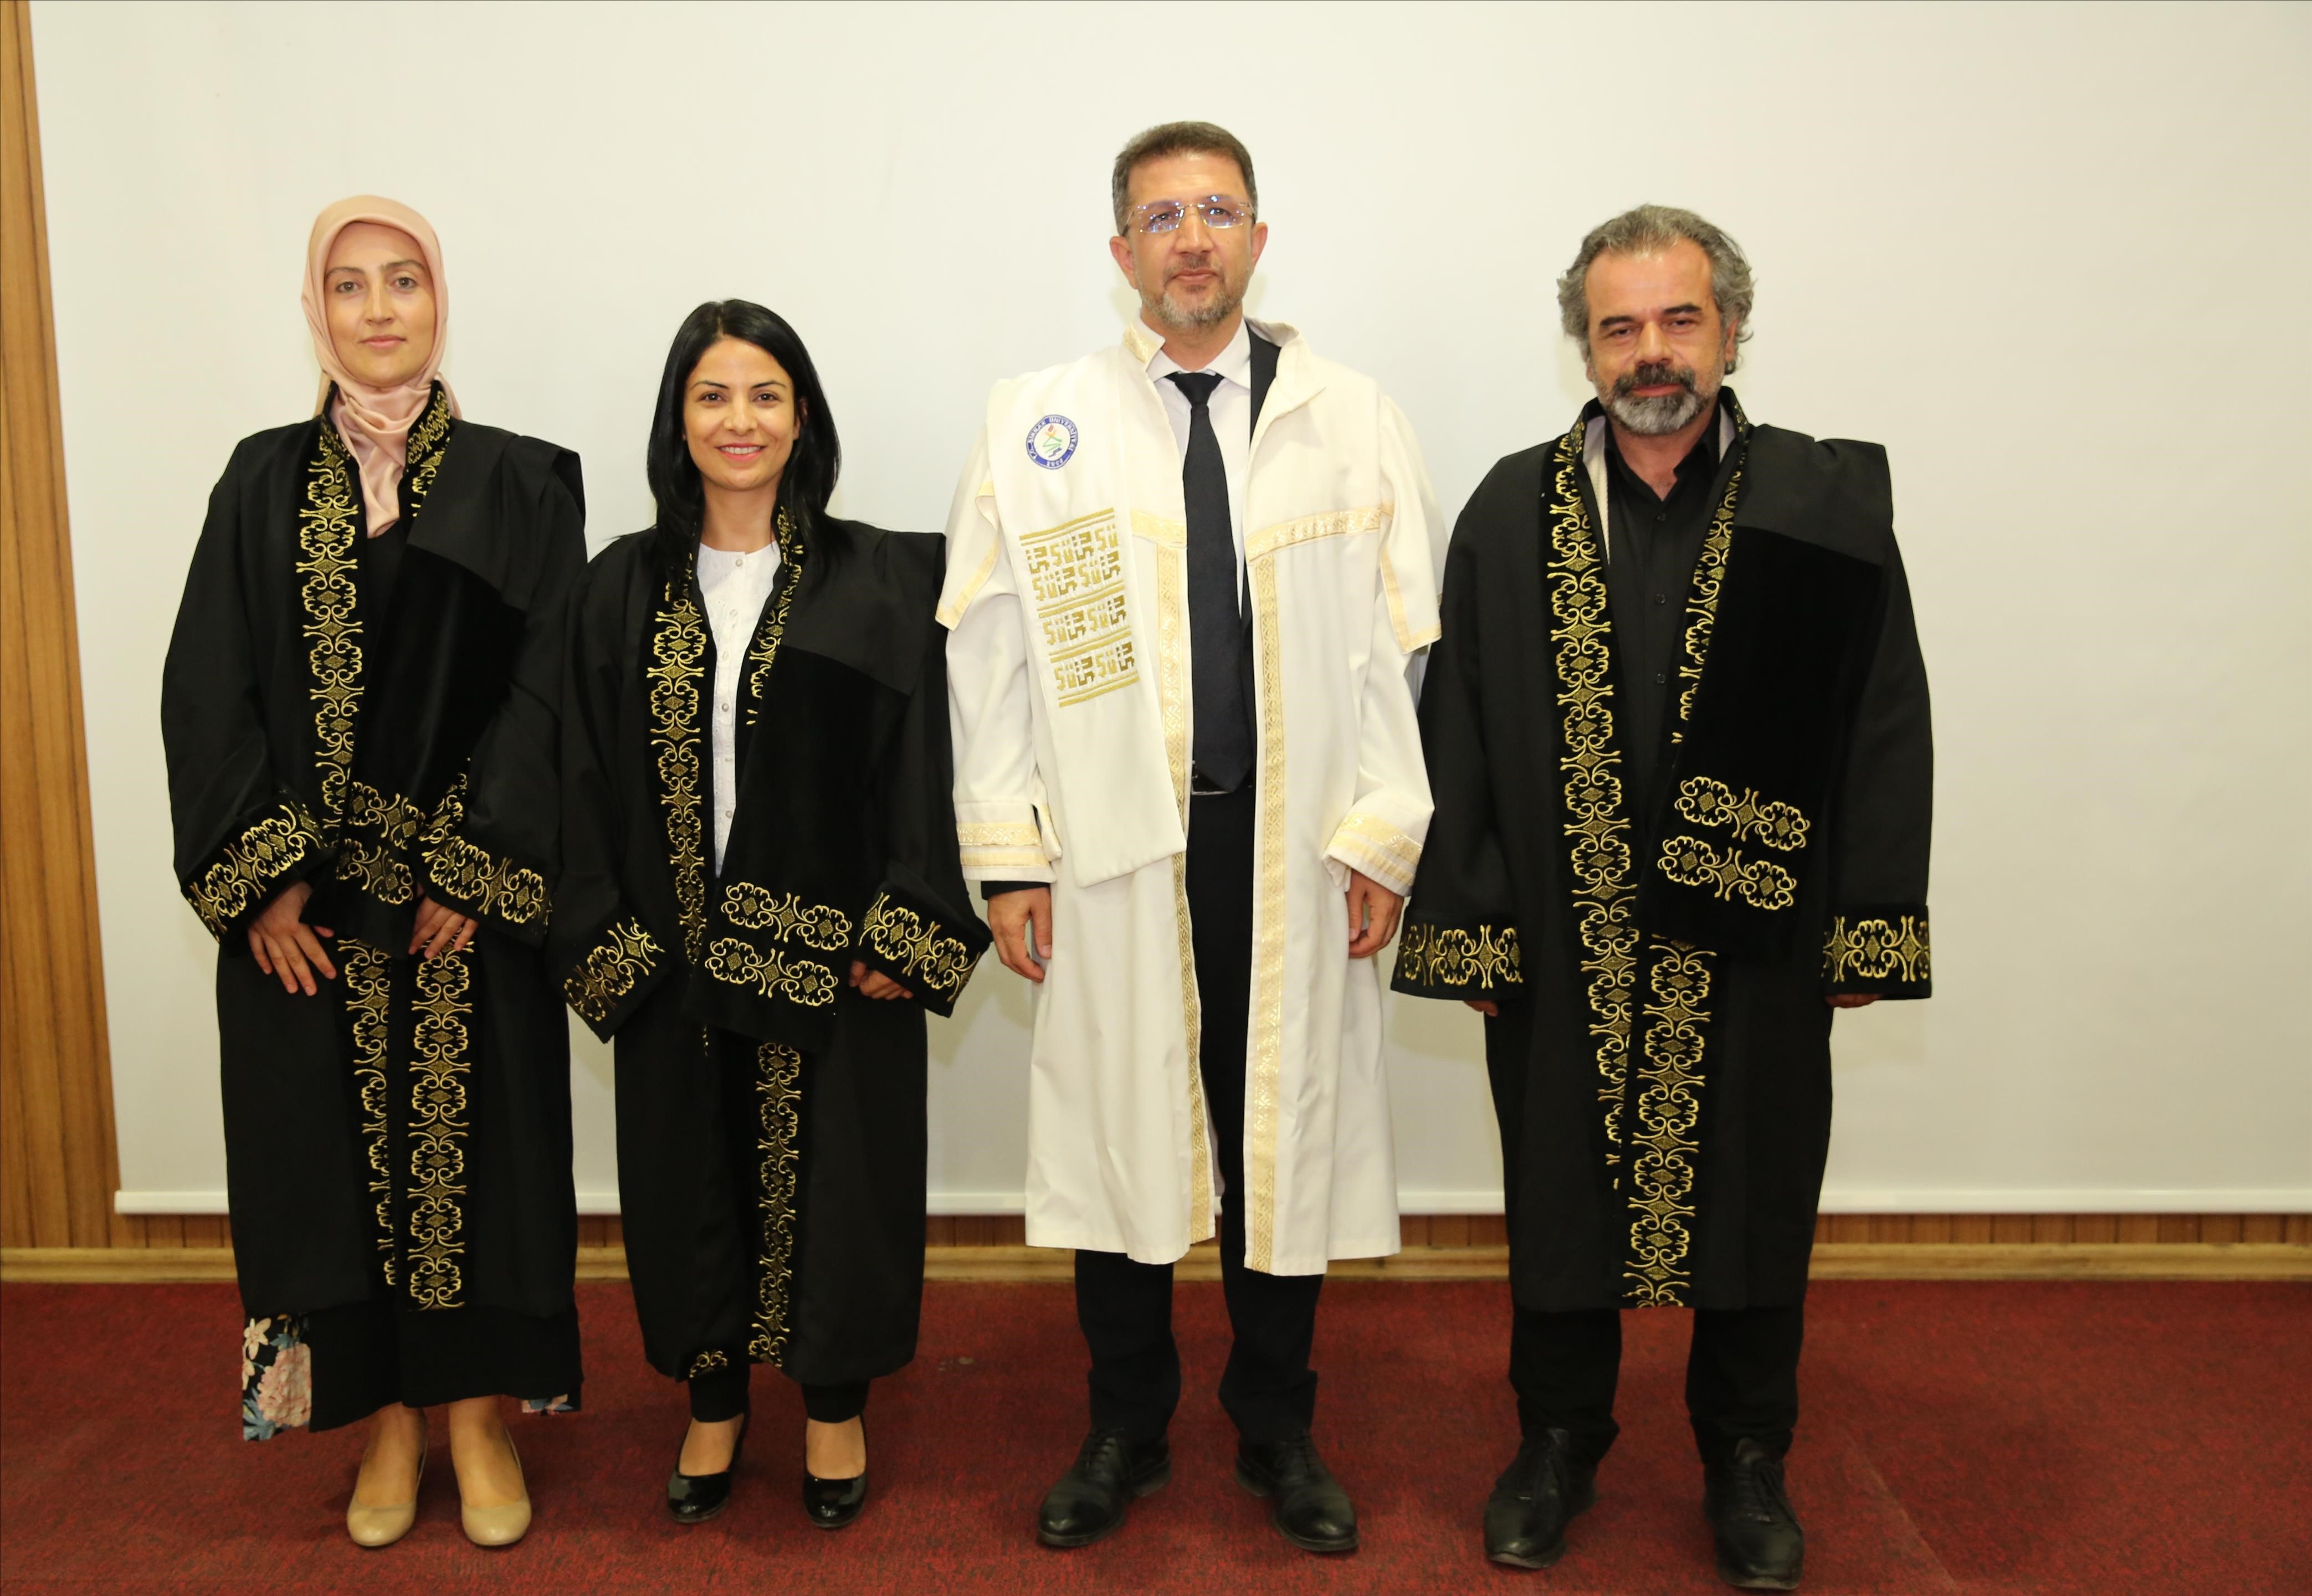 Şırnak Üniversitesi'nde öğretim görevlileri cübbe giydi